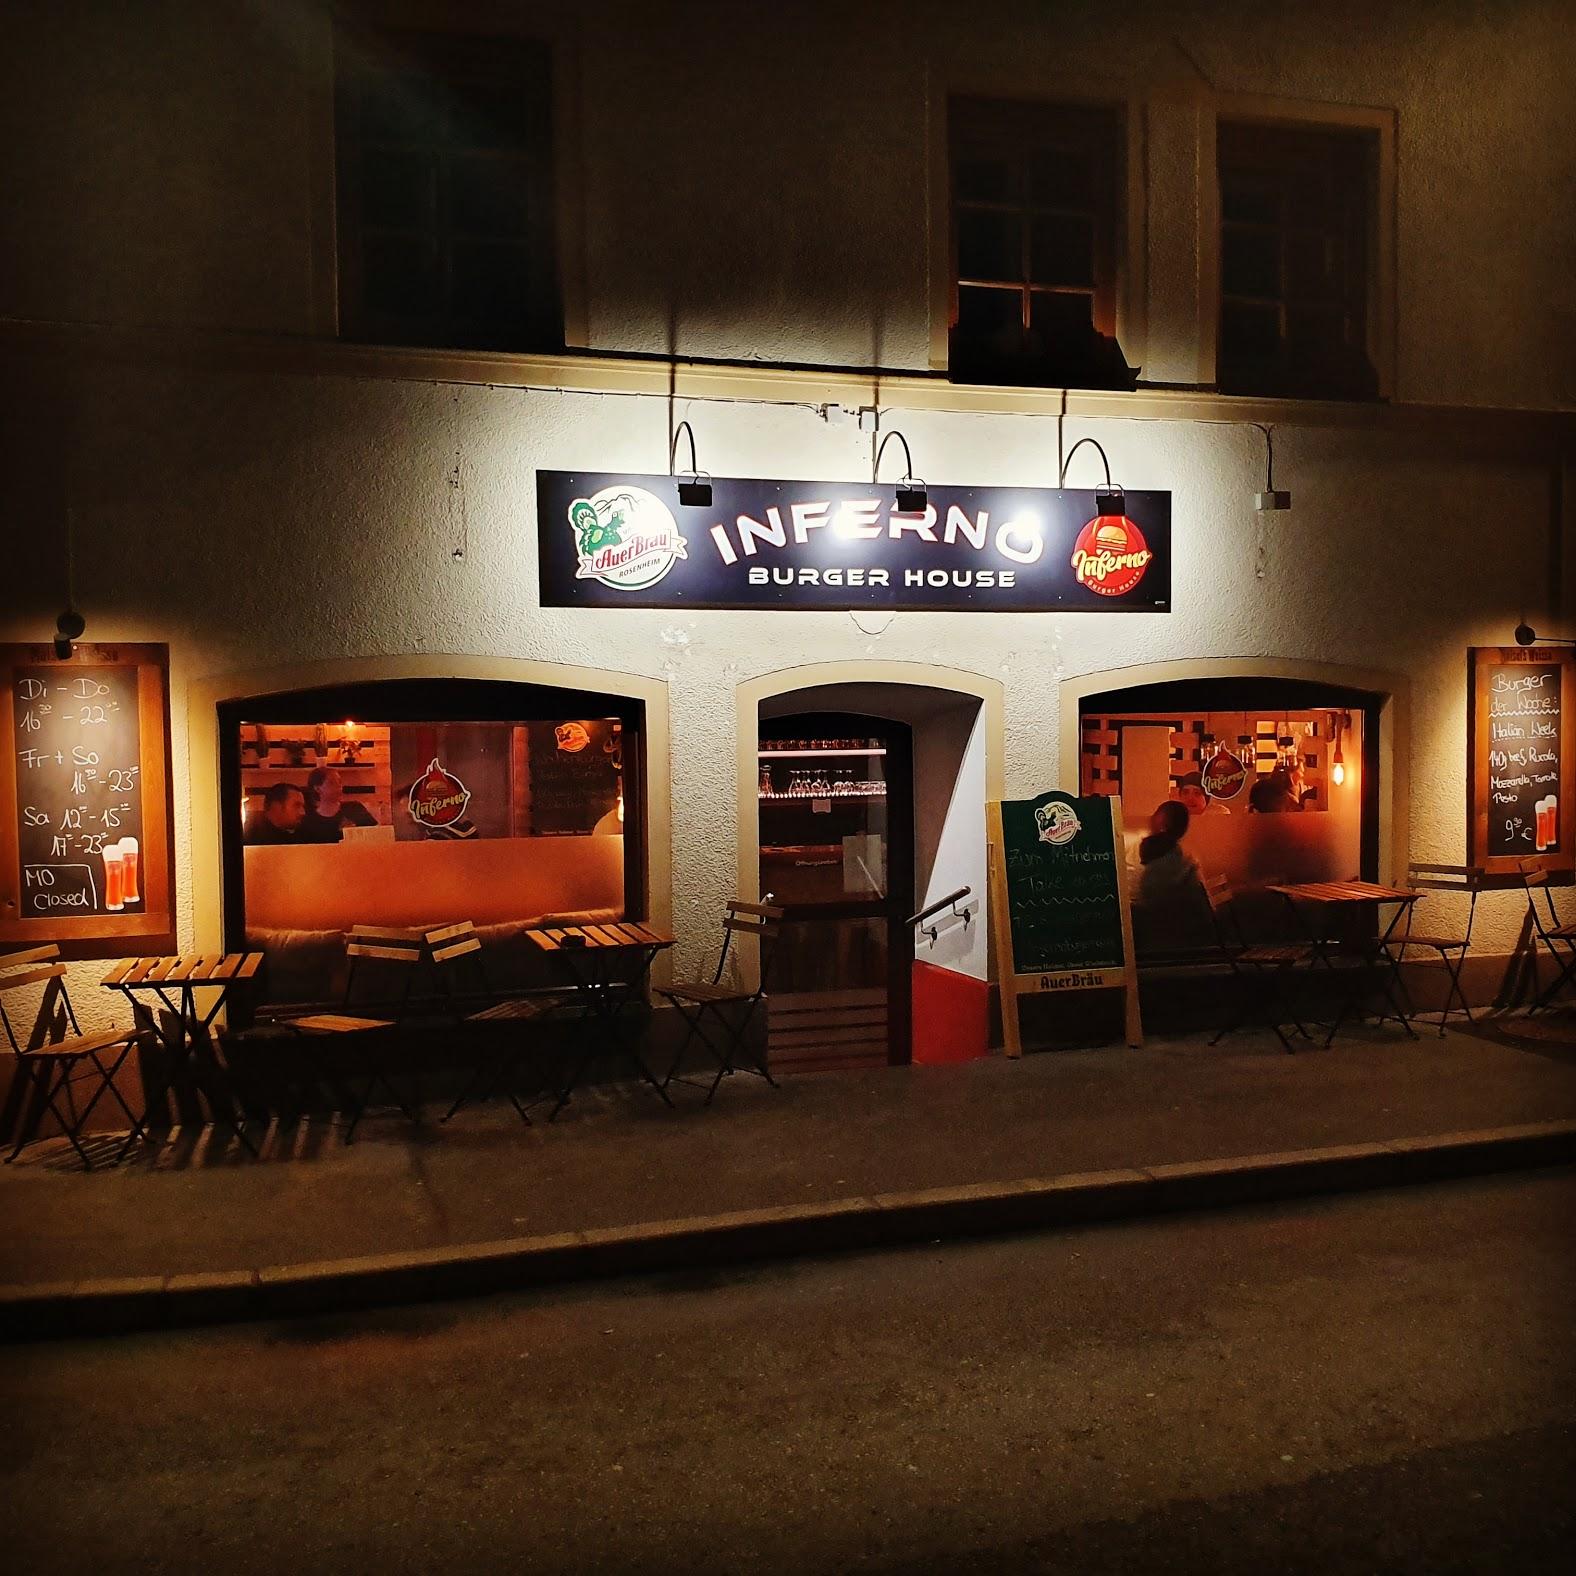 Restaurant "Inferno Burger House" in Kufstein